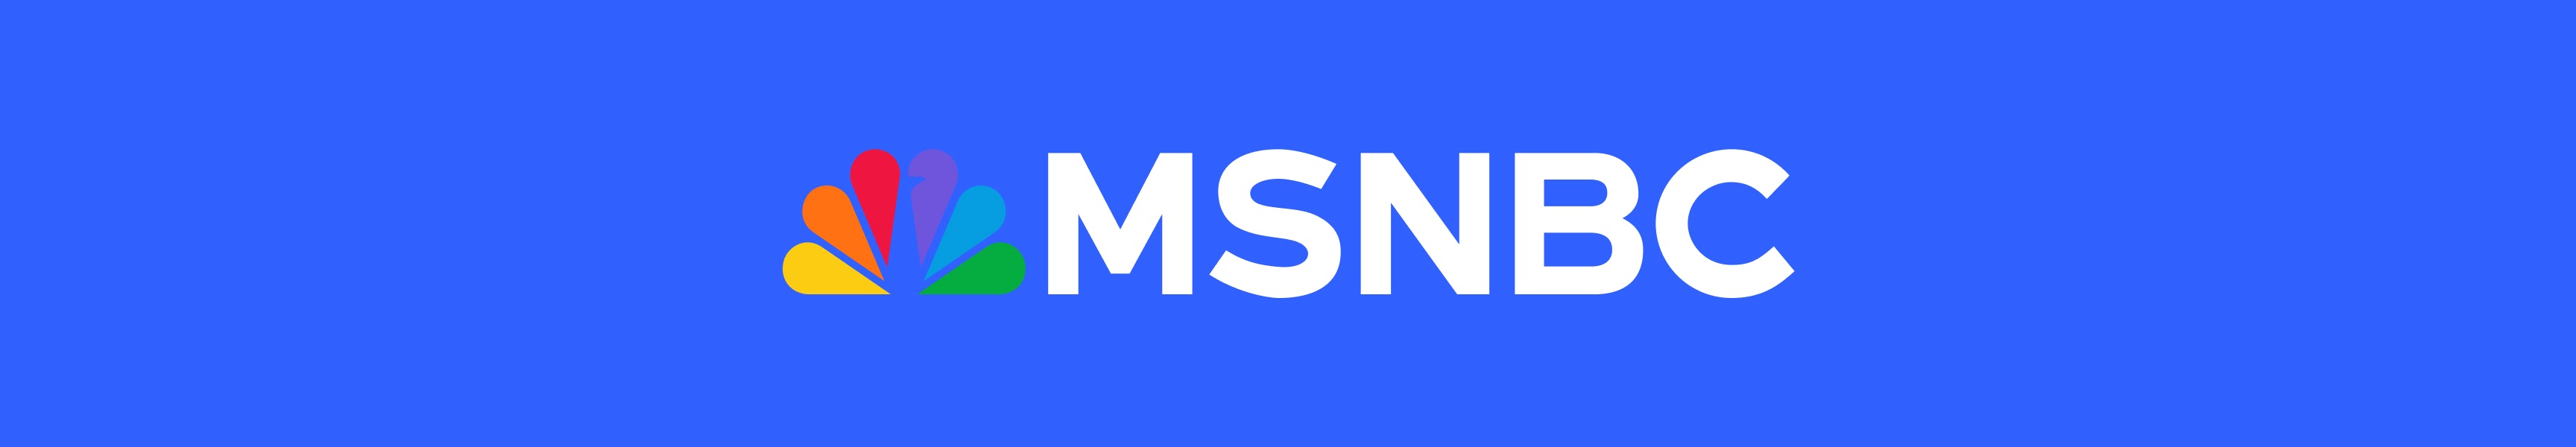 MSNBC - The Shop at NBC Studios